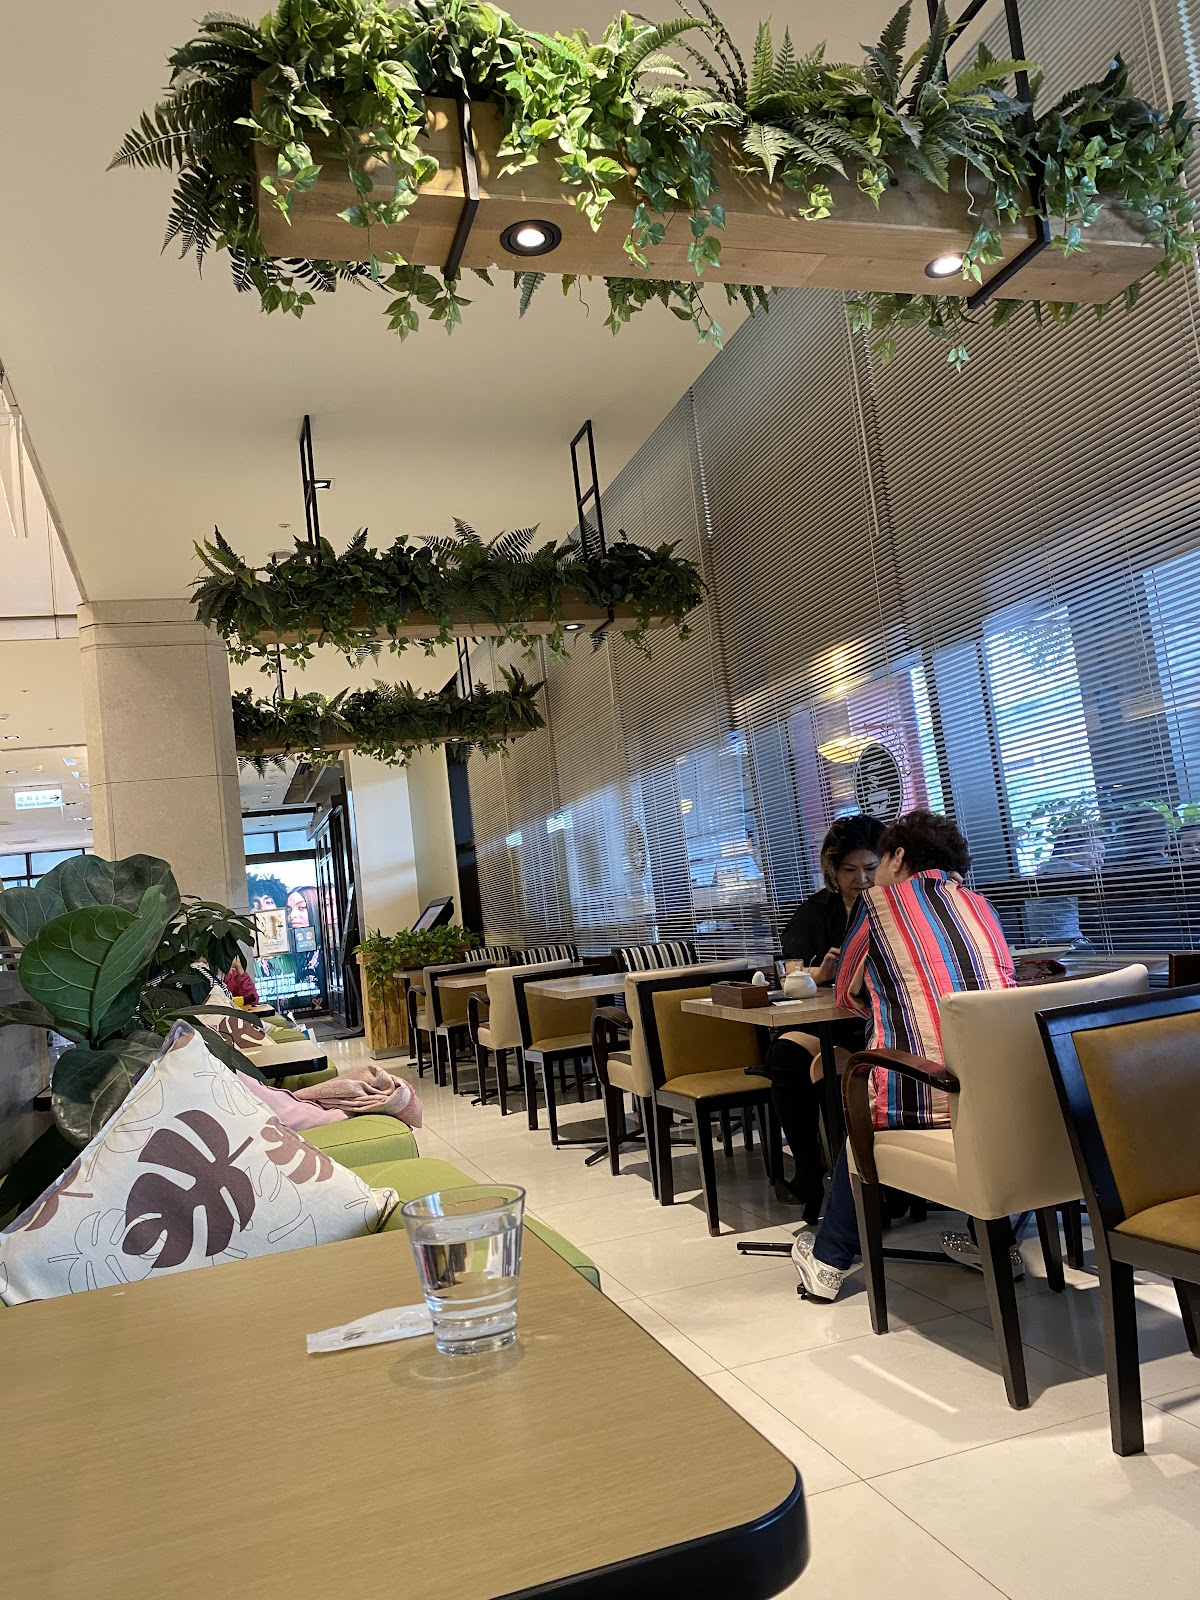 新光三越 cafe trico三色旗餐廳2023年，cp值商